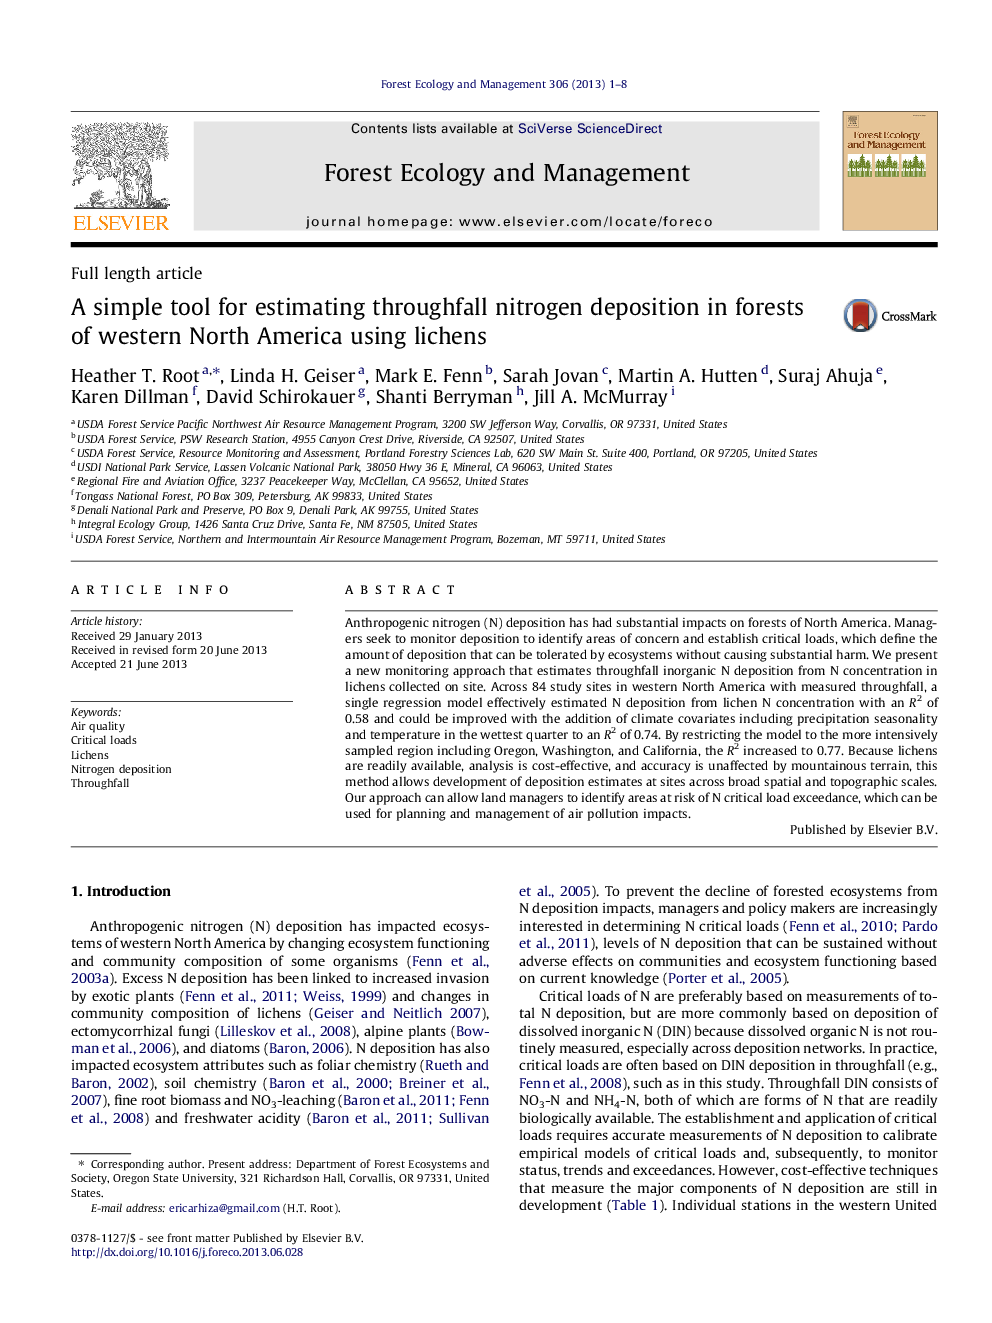 یک ابزار ساده برای برآورد رسوب نیتروژن از طریق نشتی در جنگل های شمال غربی آمریکای شمالی با استفاده از لیسه های گیاهی 